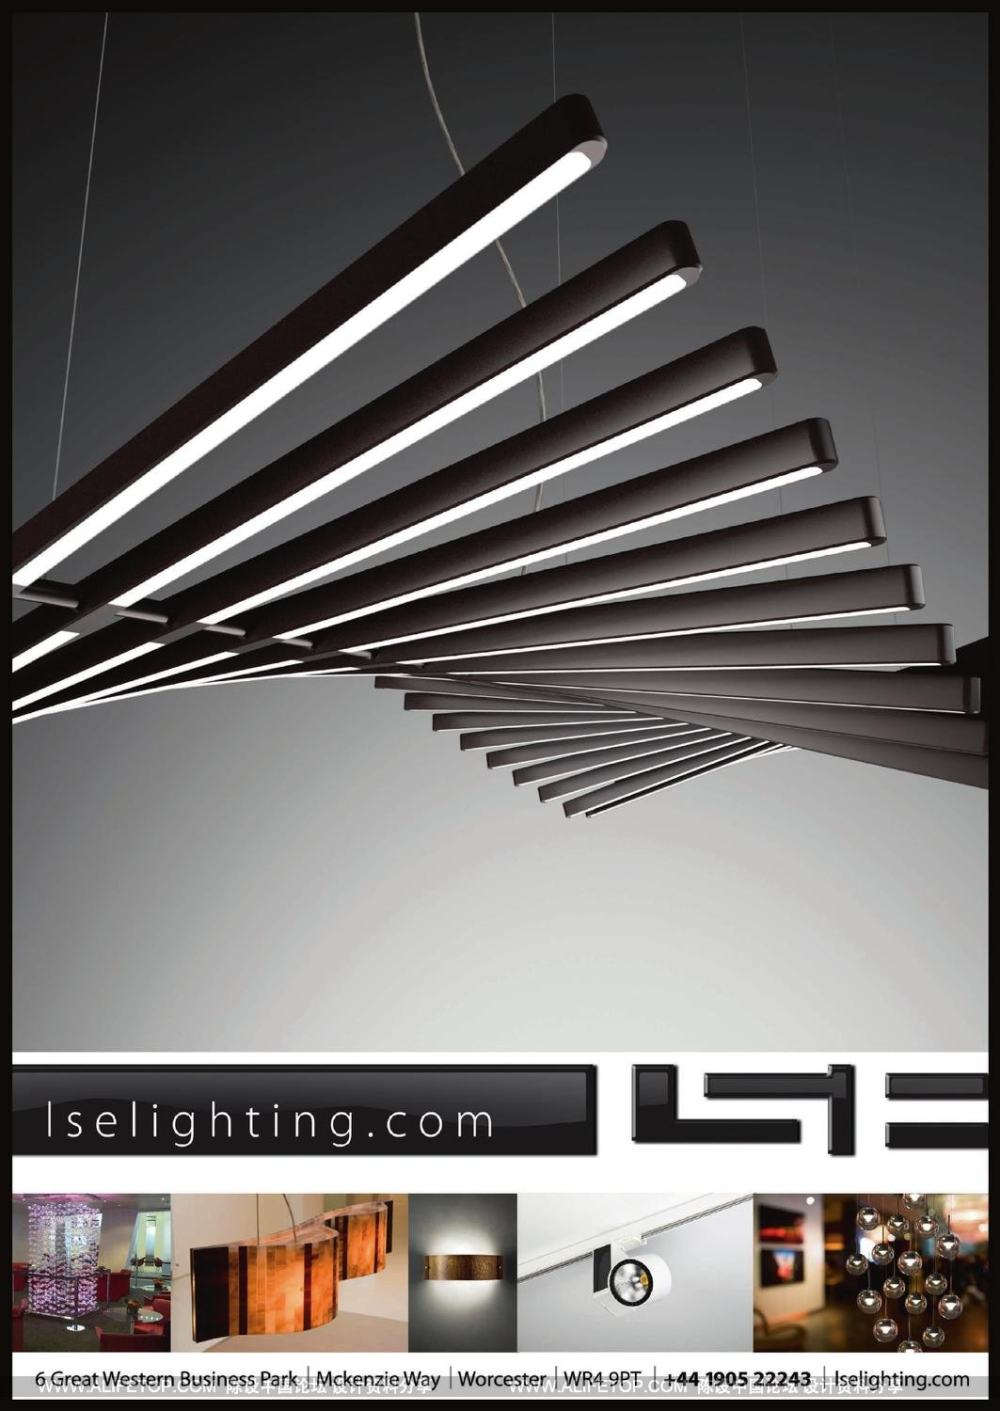 darc-2灯具照明设计杂志_darc-2灯具照明设计杂志 (17).jpg